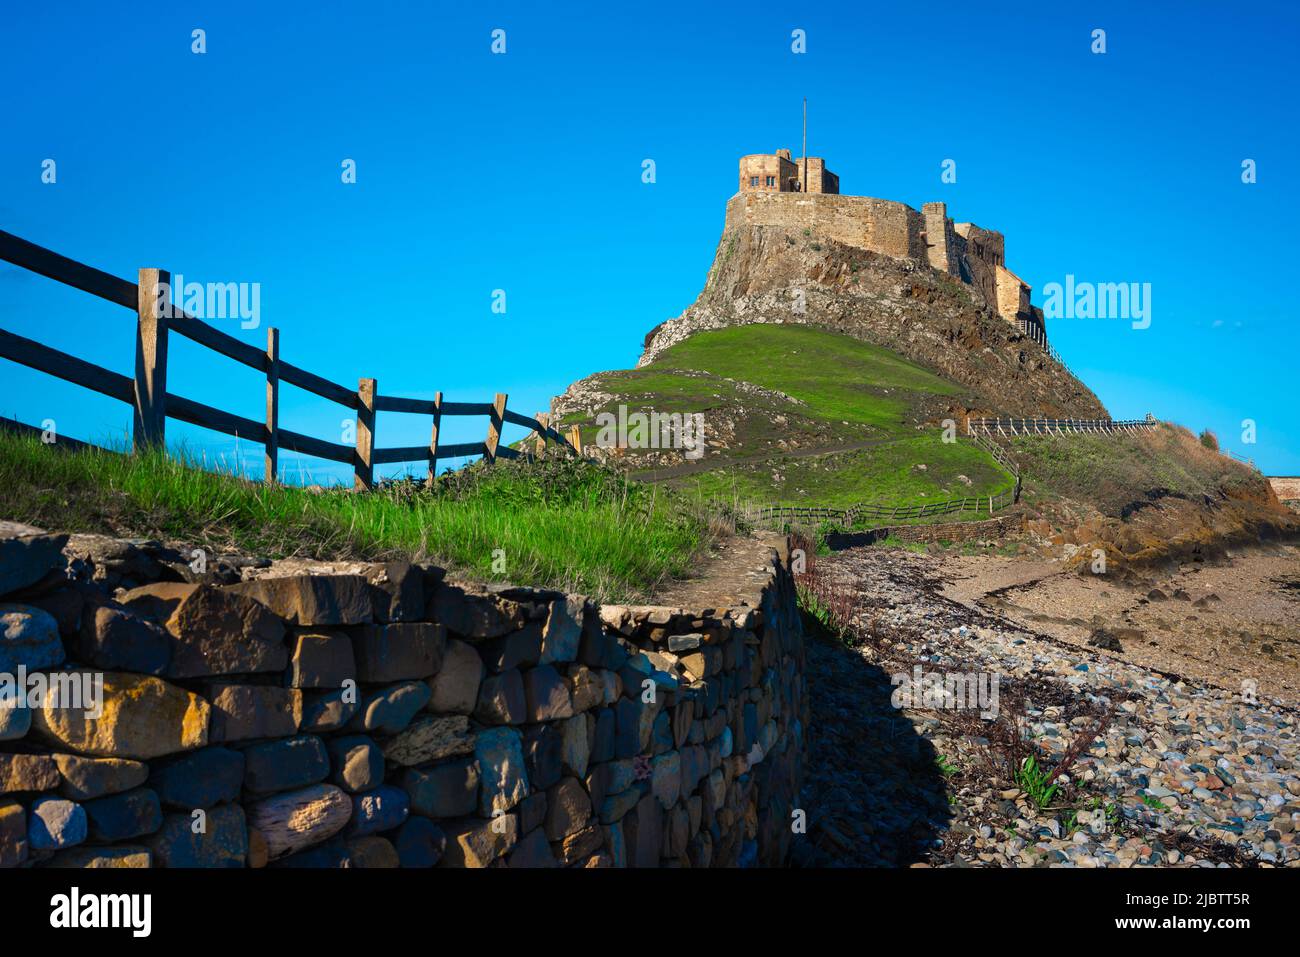 Castello di Lindisfarne, vista in estate del castello del 16th secolo situato sulla Holy Island (Lindisfarne) sulla costa del Northumberland, Inghilterra, Regno Unito Foto Stock